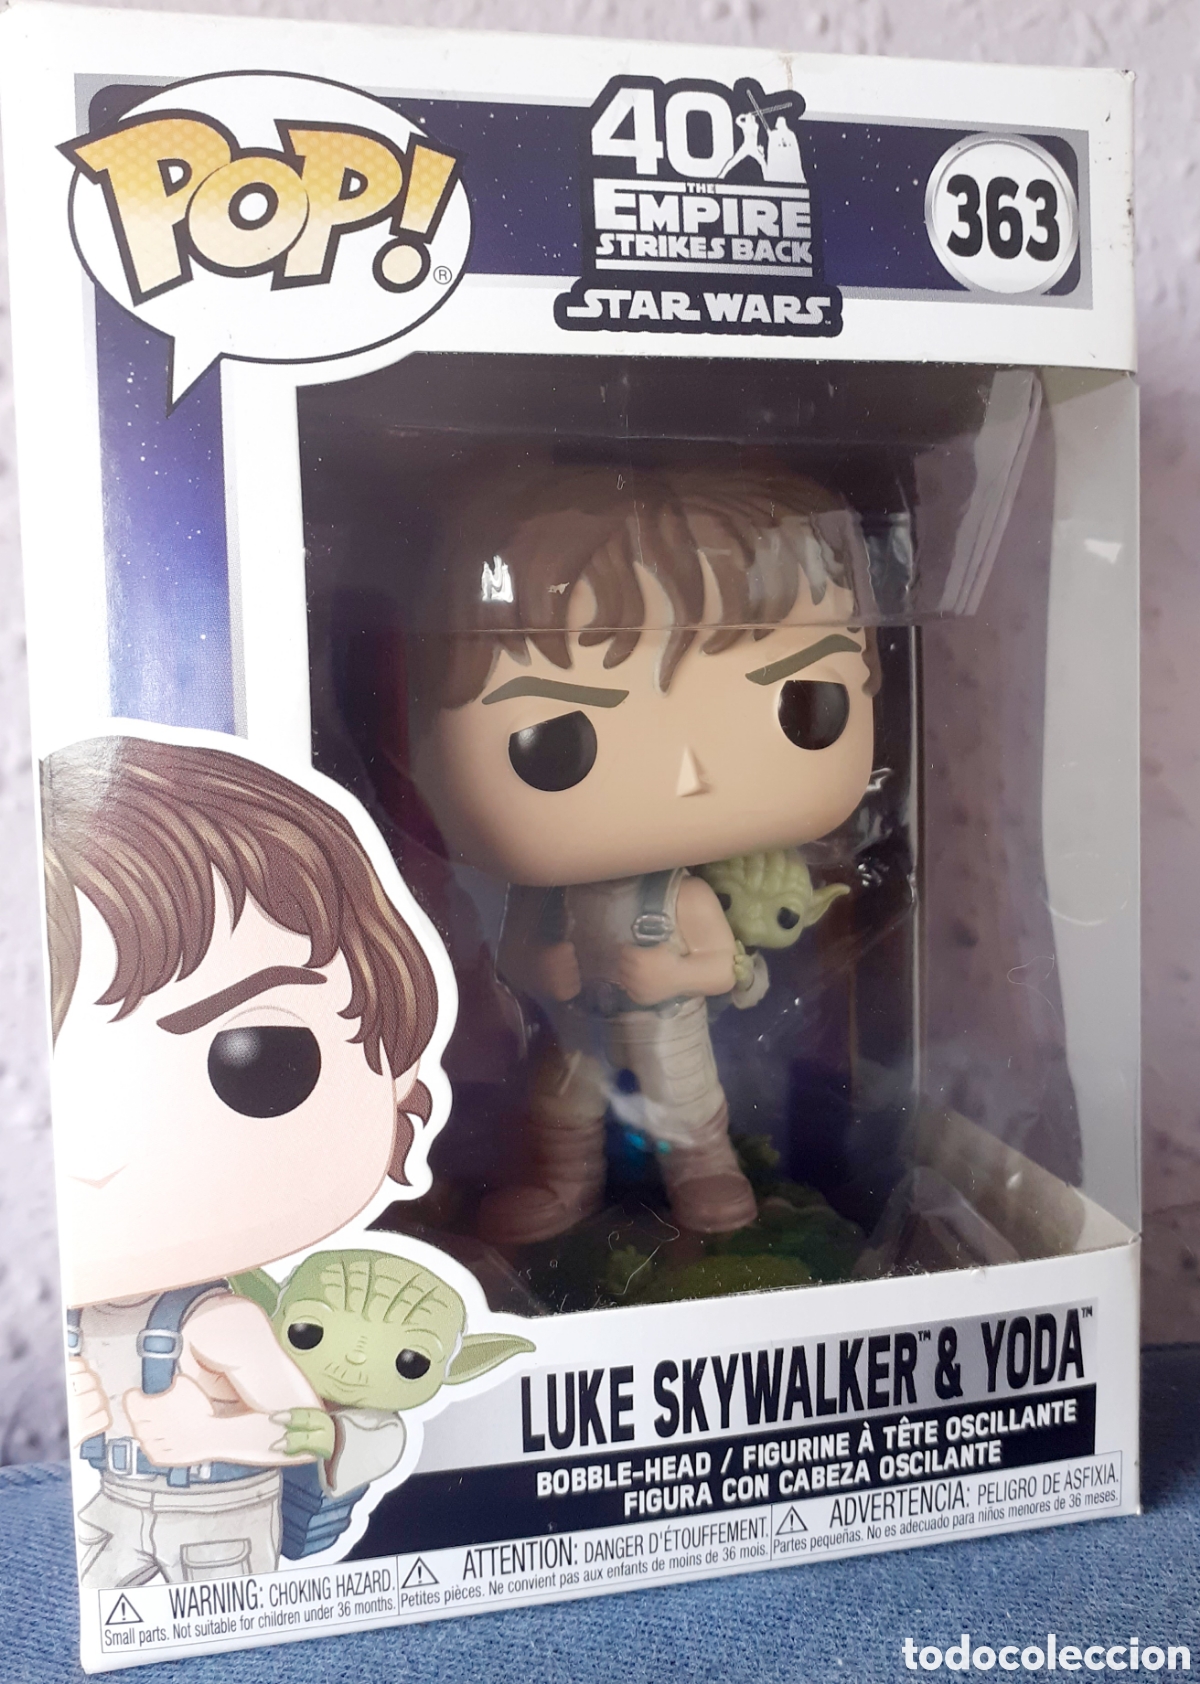 Figura Funko Pop - Star Wars 363 - Luke Skywalker y Yoda